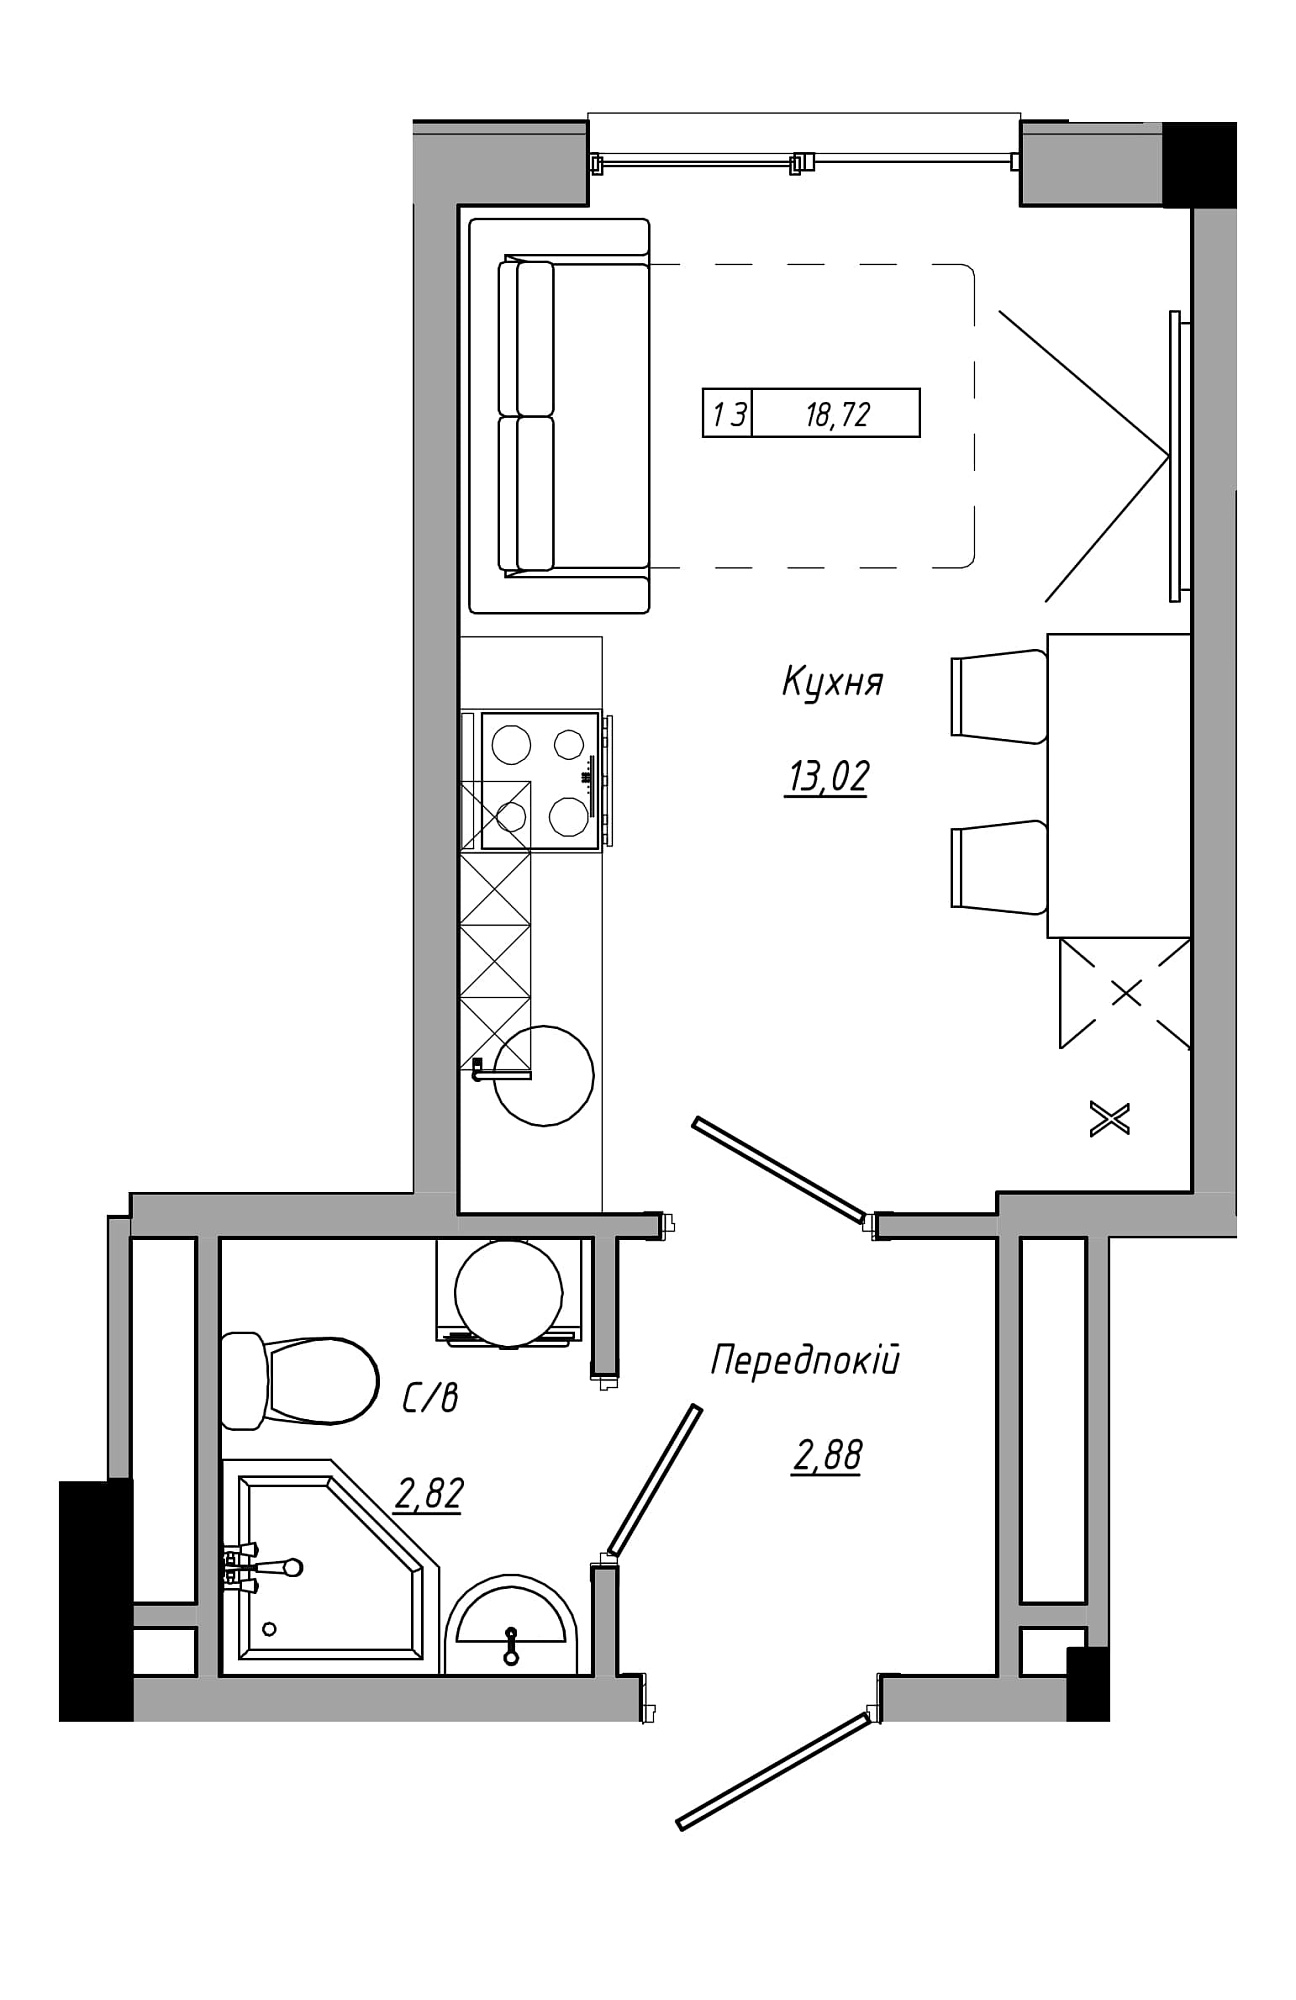 Планування Smart-квартира площею 18.72м2, AB-21-09/00011.